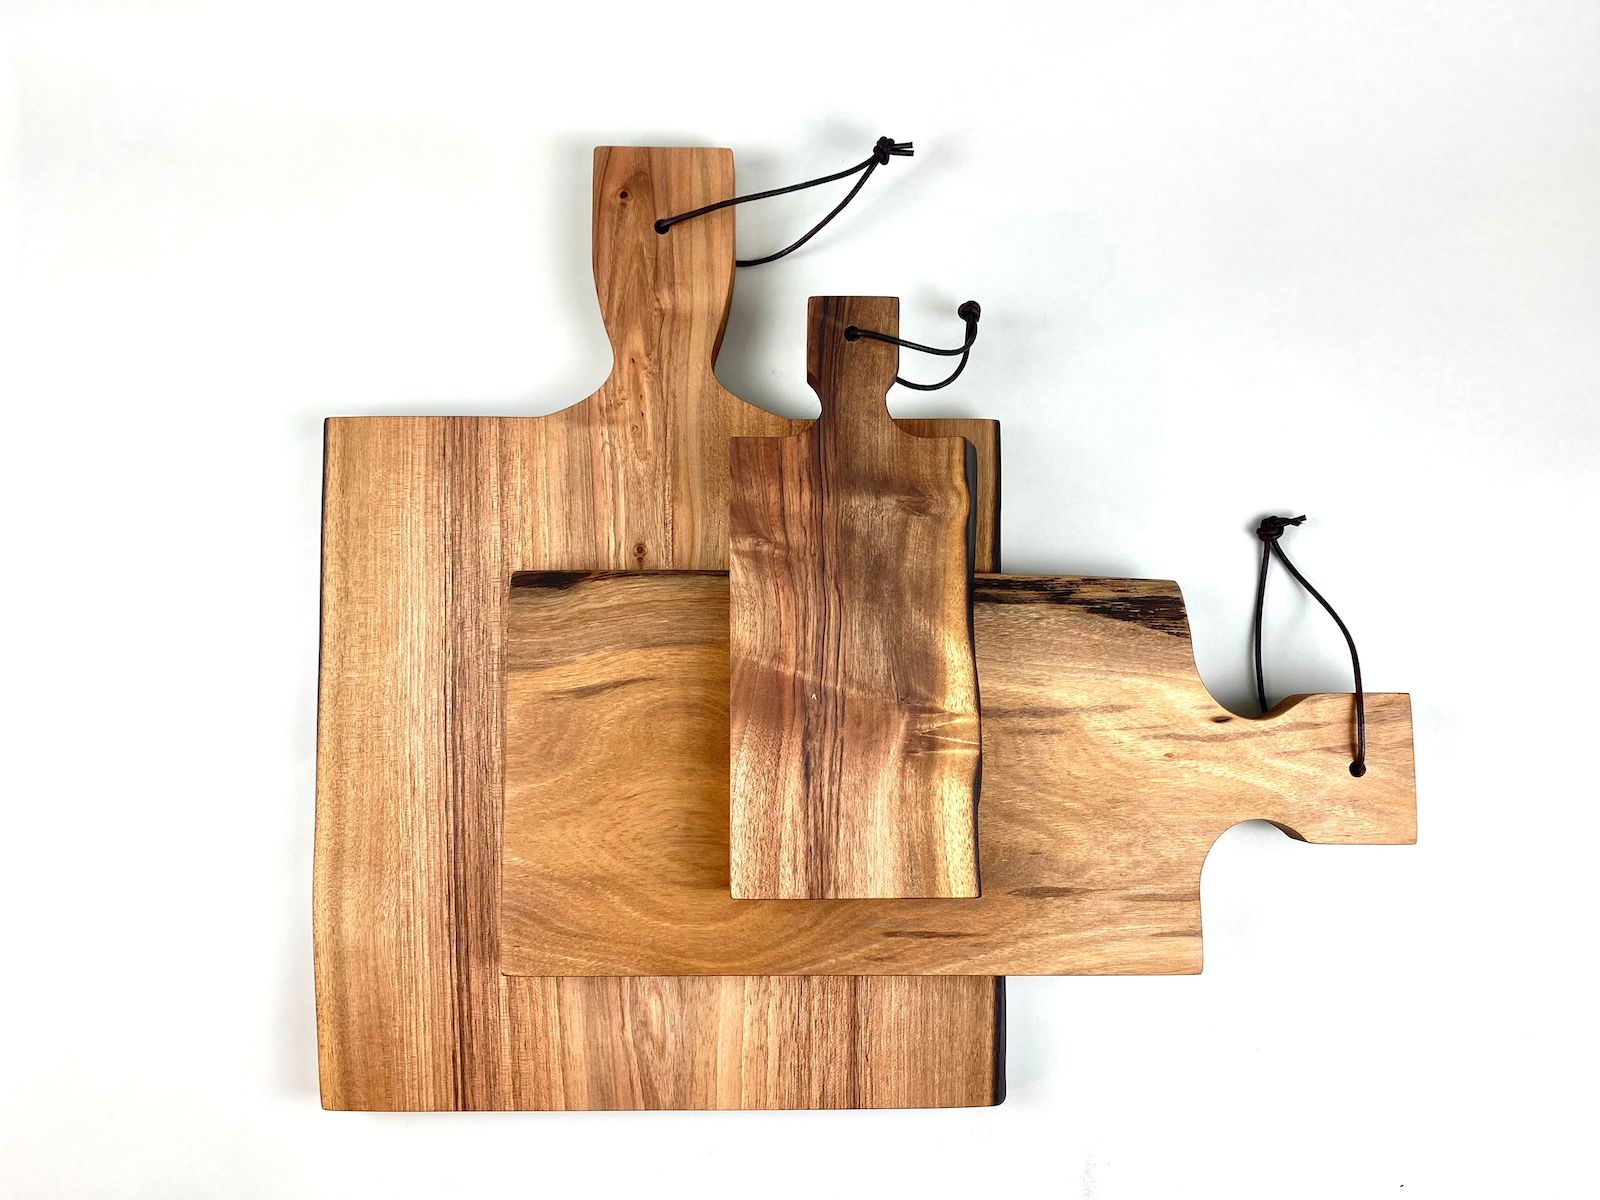 Medium Walnut Wood Cutting Board